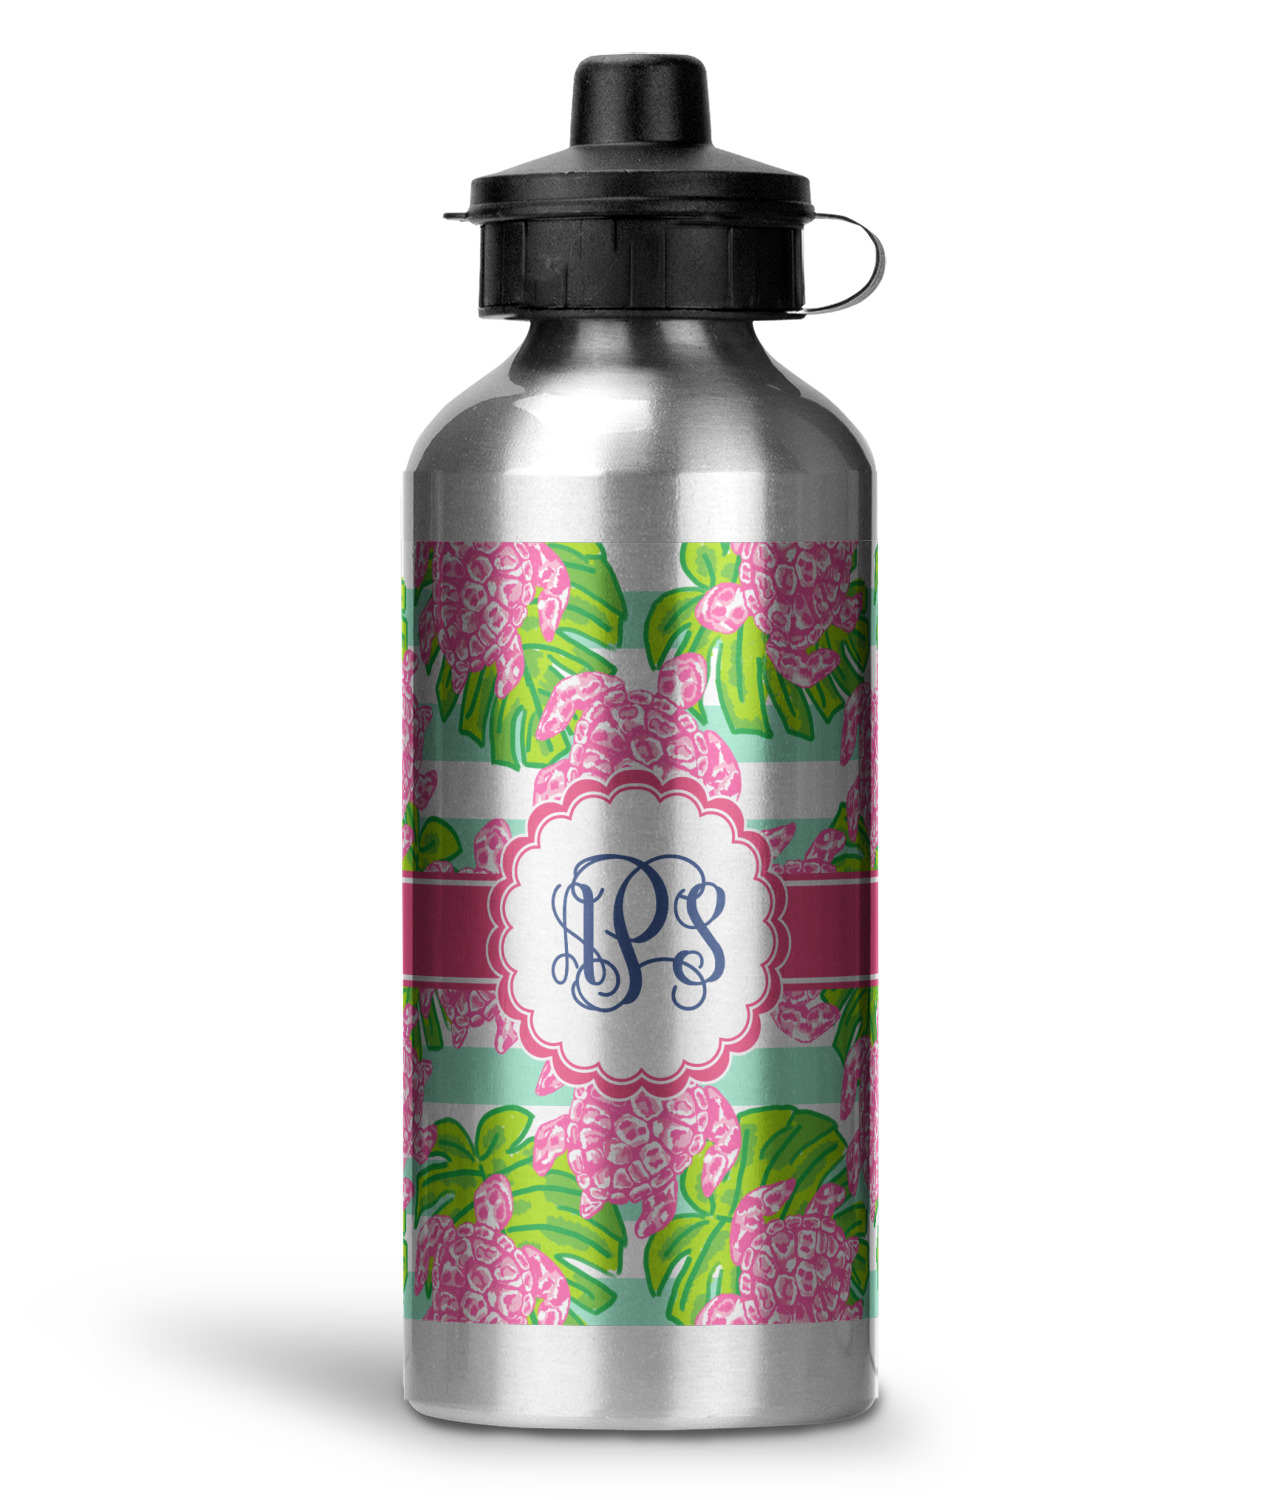 Preppy Design Custom Water Bottles - 20 oz - Aluminum